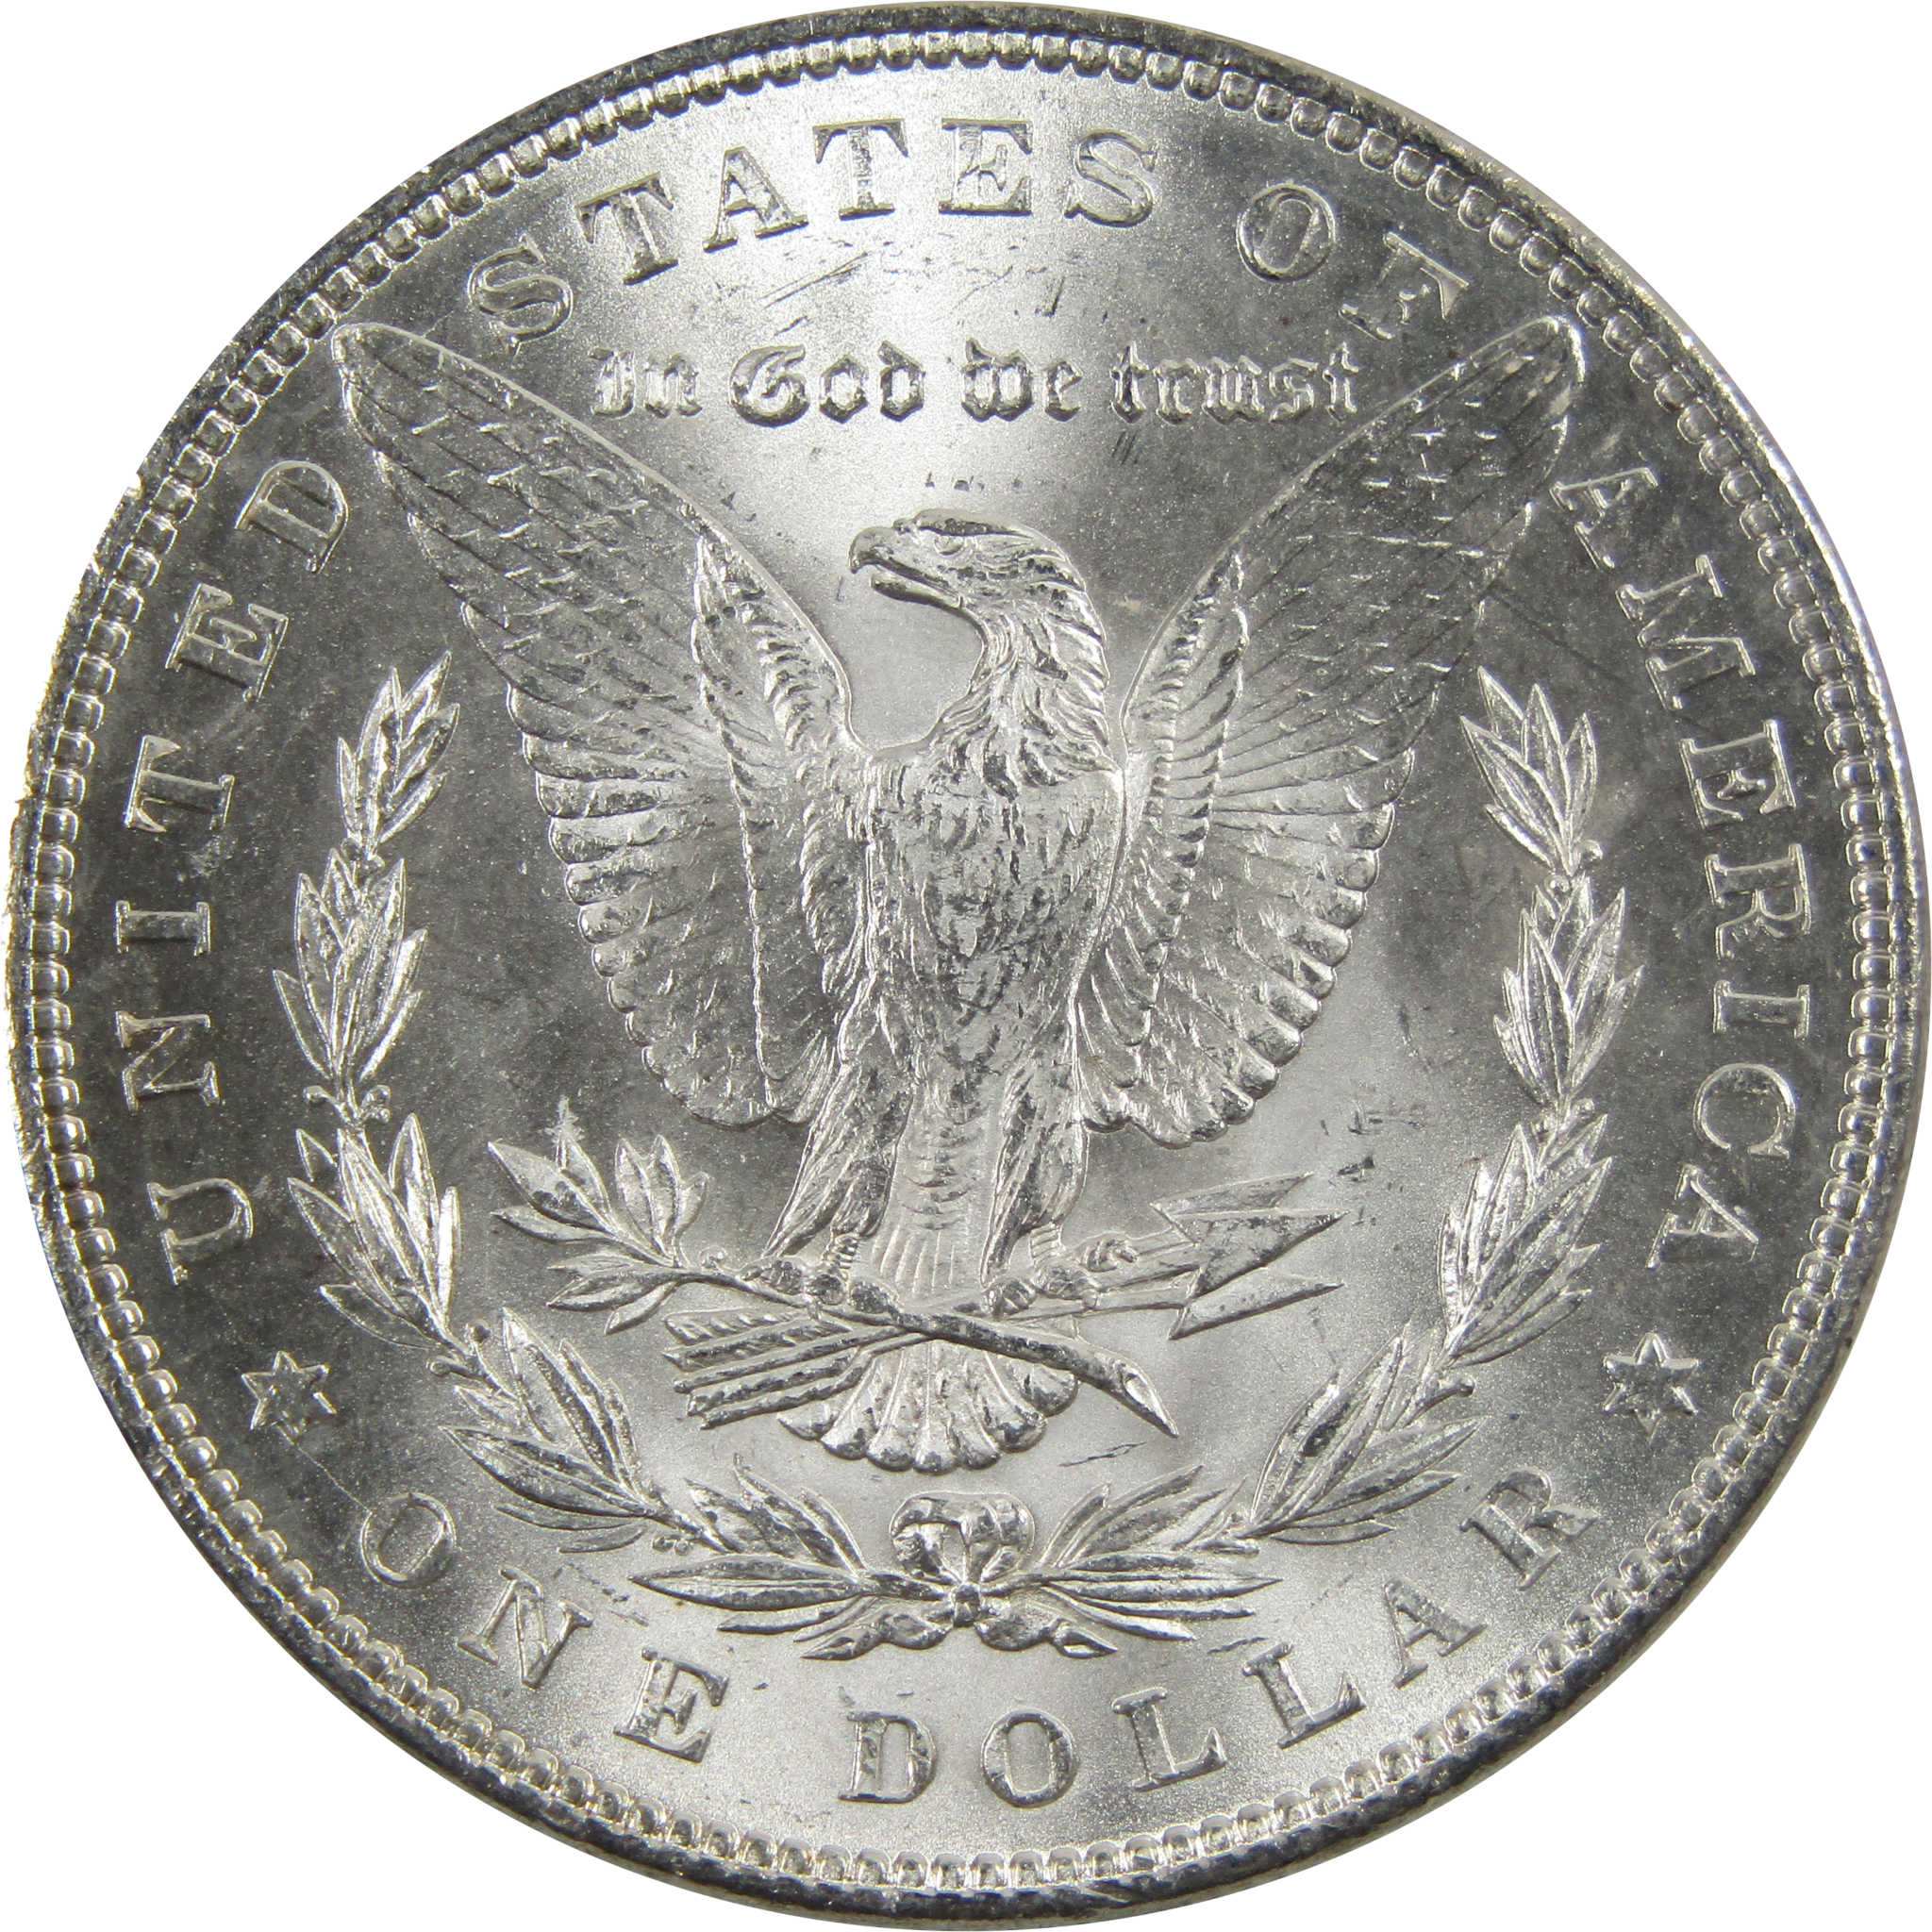 1883 Morgan Dollar BU Uncirculated 90% Silver $1 Coin SKU:I5173 - Morgan coin - Morgan silver dollar - Morgan silver dollar for sale - Profile Coins &amp; Collectibles